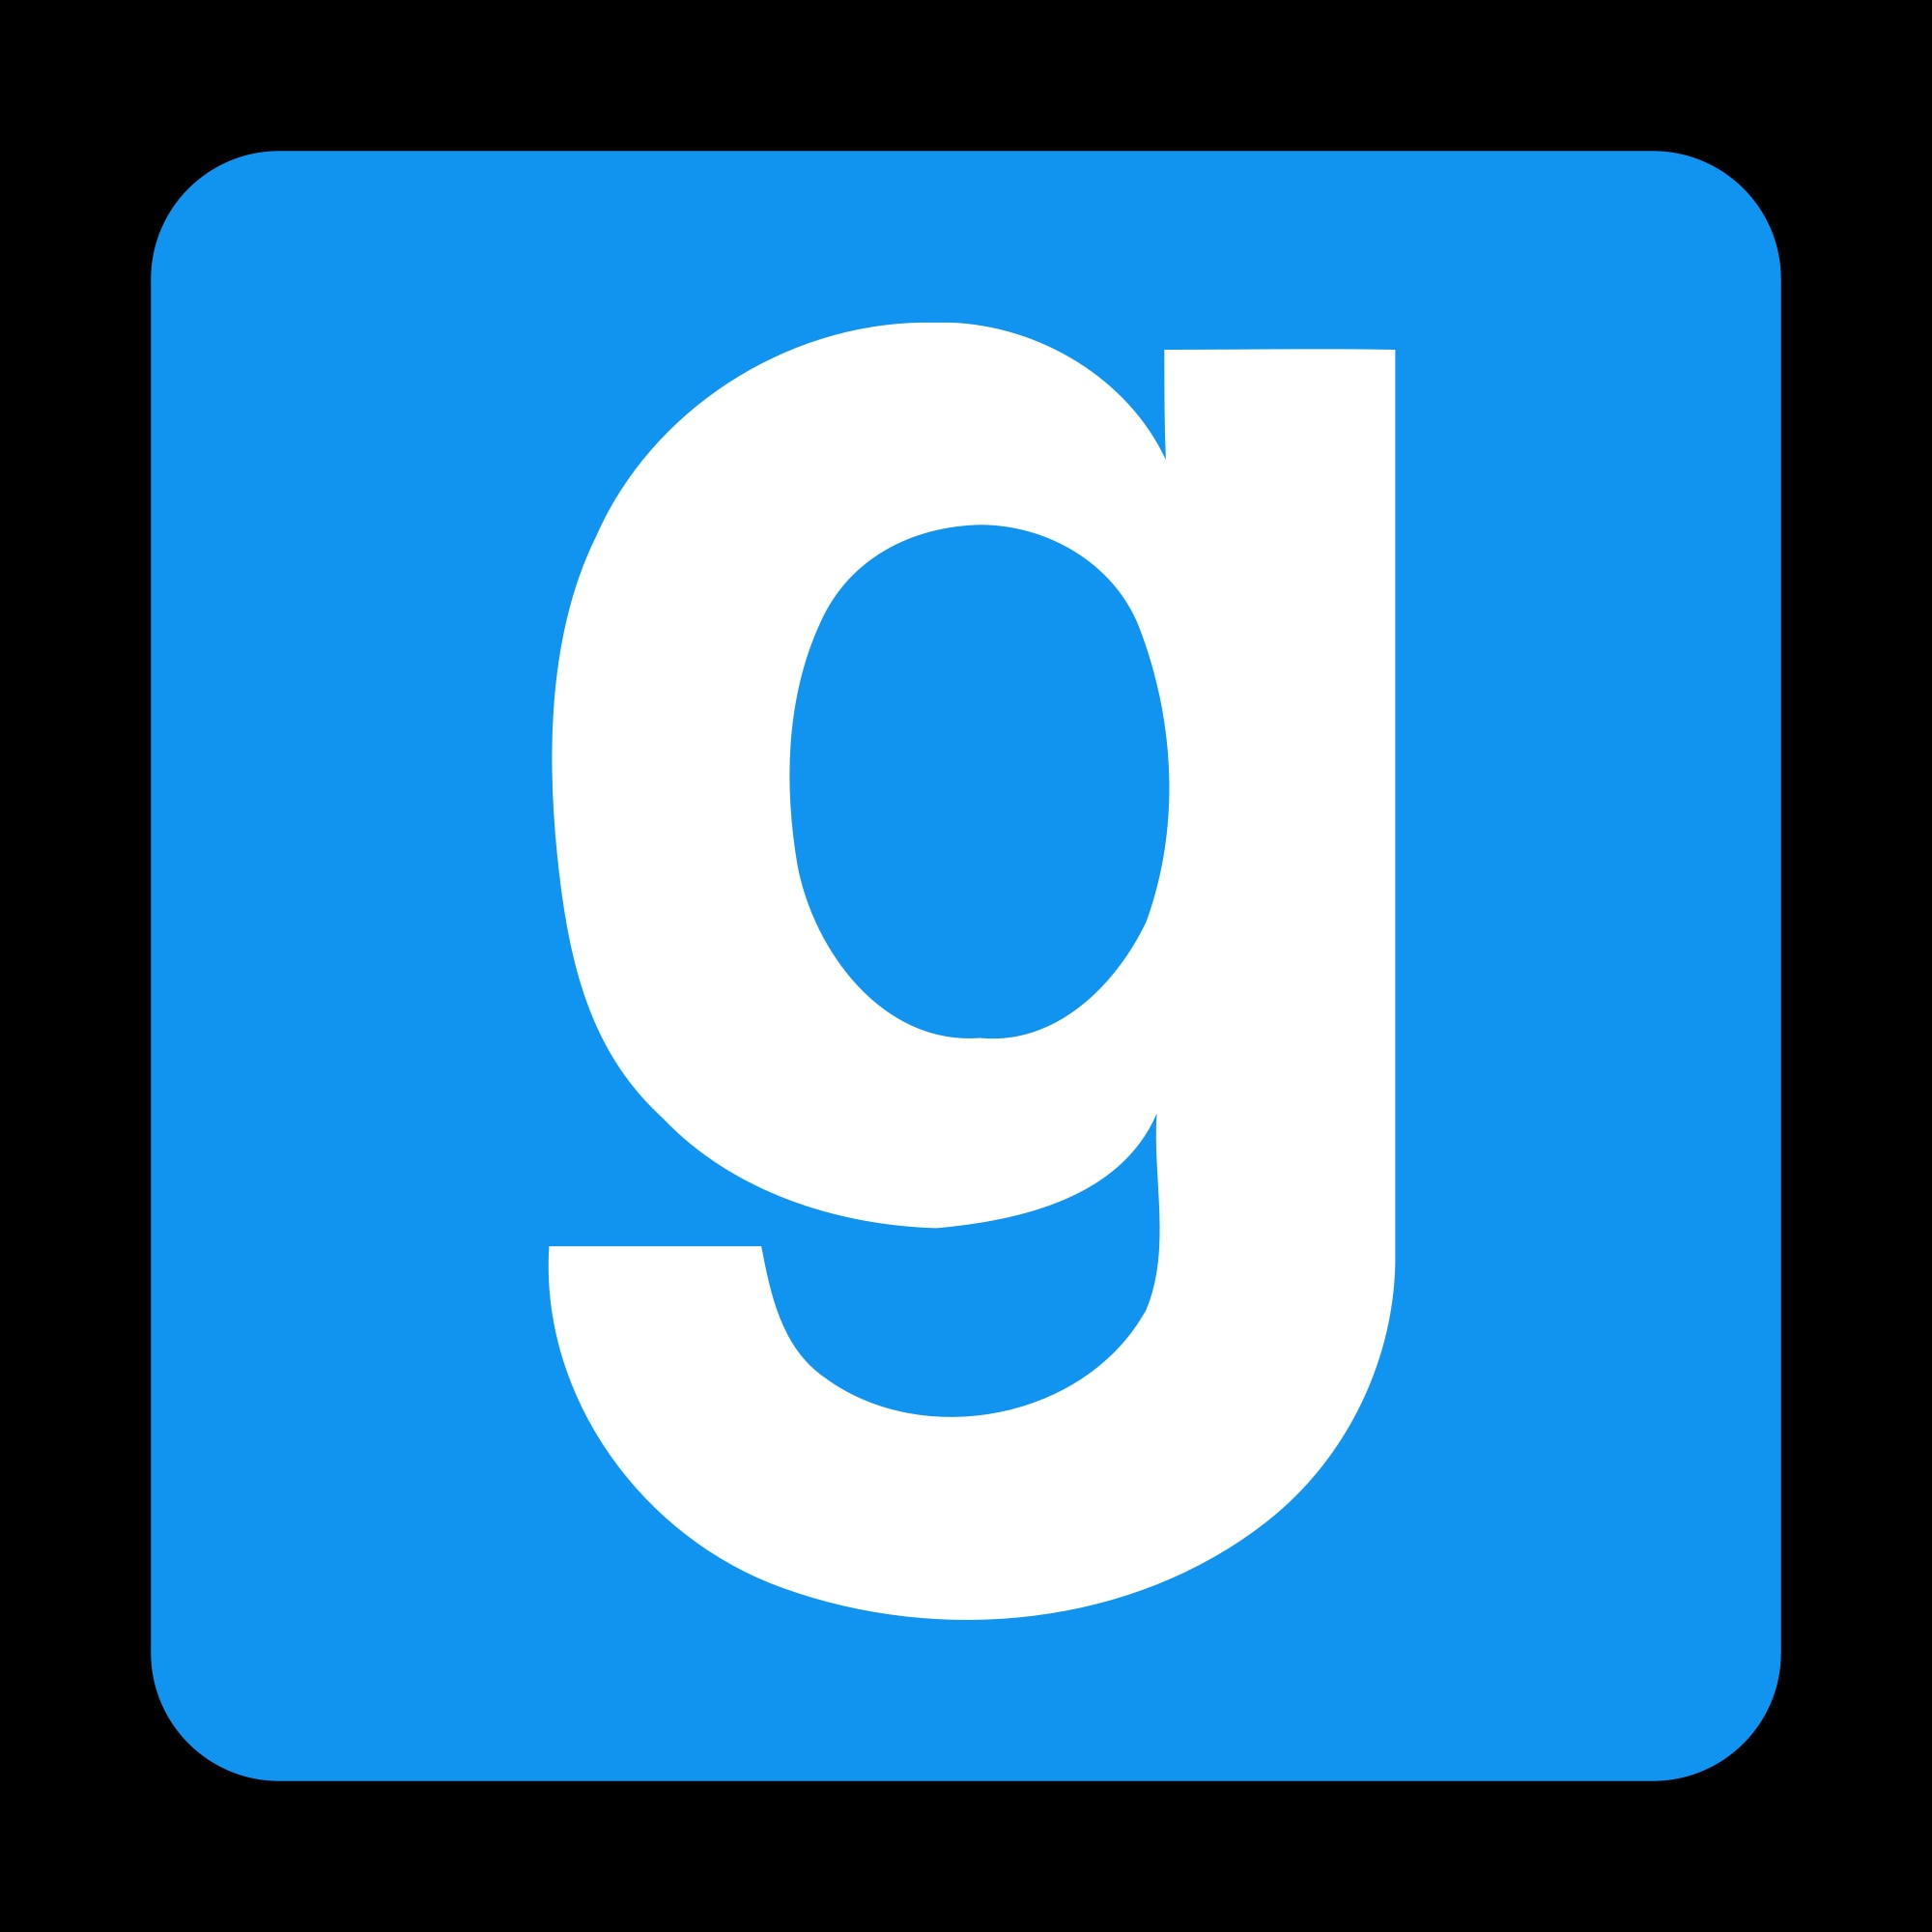 GitHub - Official-Husko/Husko-s-SteamWorkshop-Downloader: Download